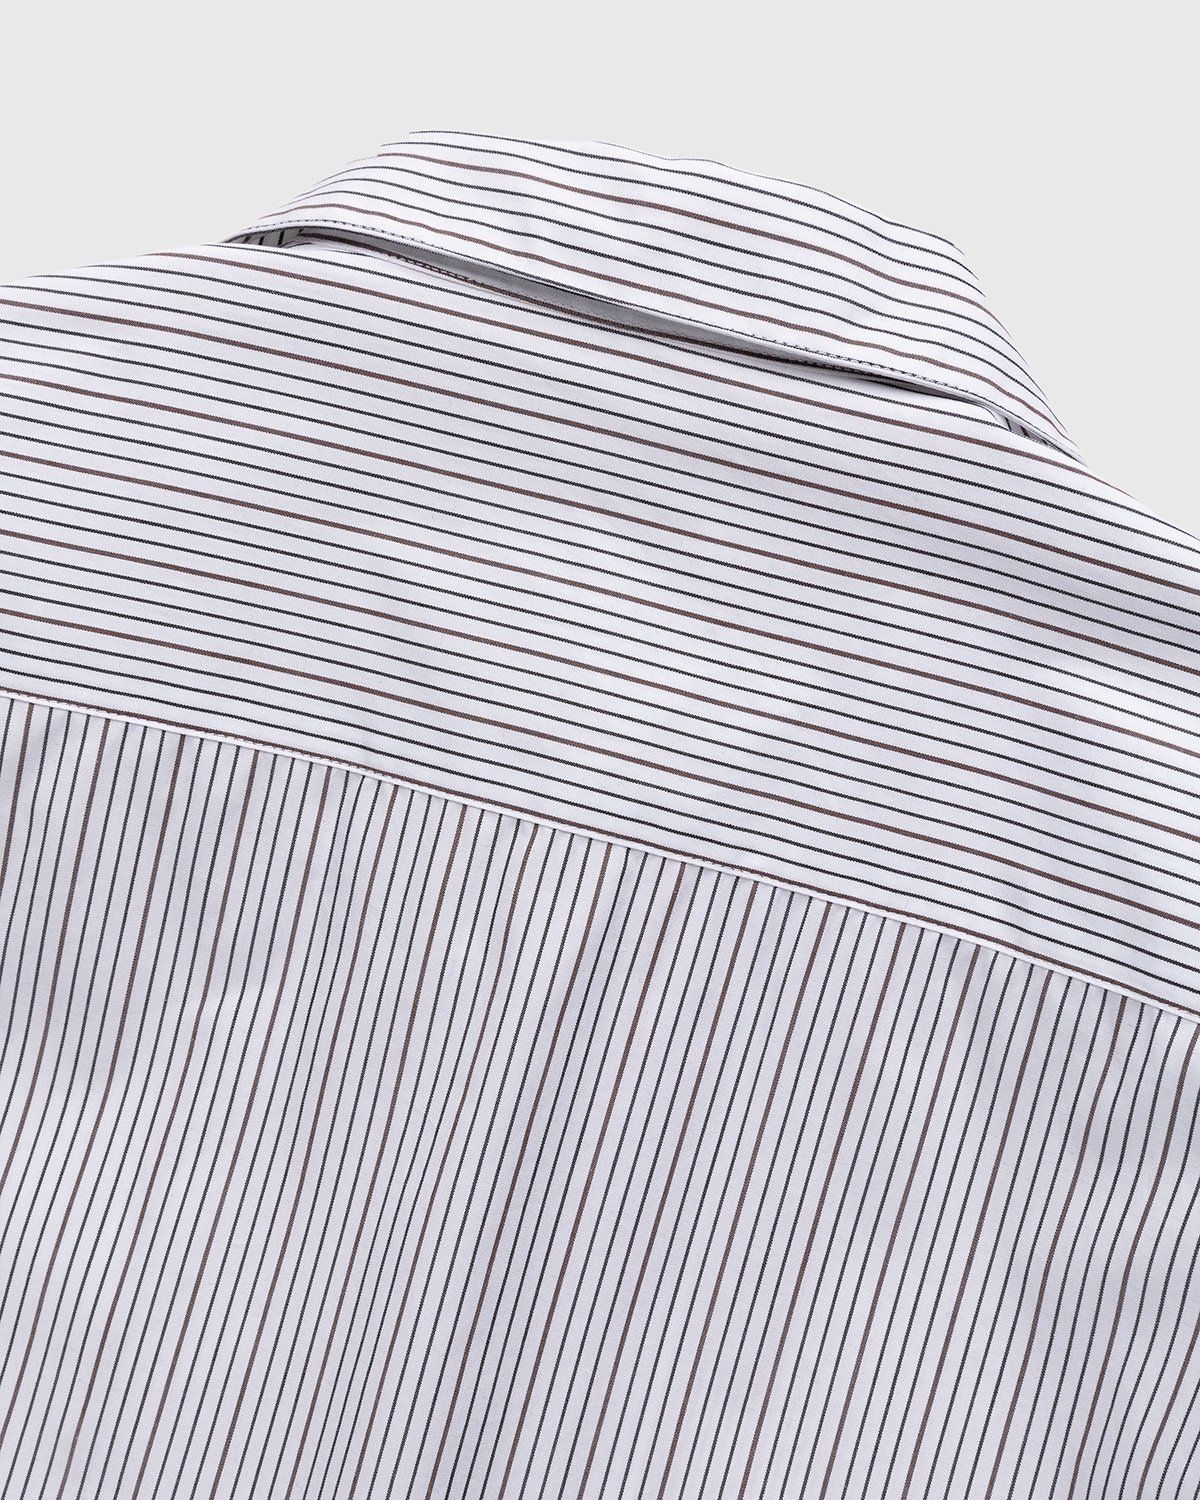 Highsnobiety – Striped Poplin Short-Sleeve Shirt White/Black - Shortsleeve Shirts - White - Image 4